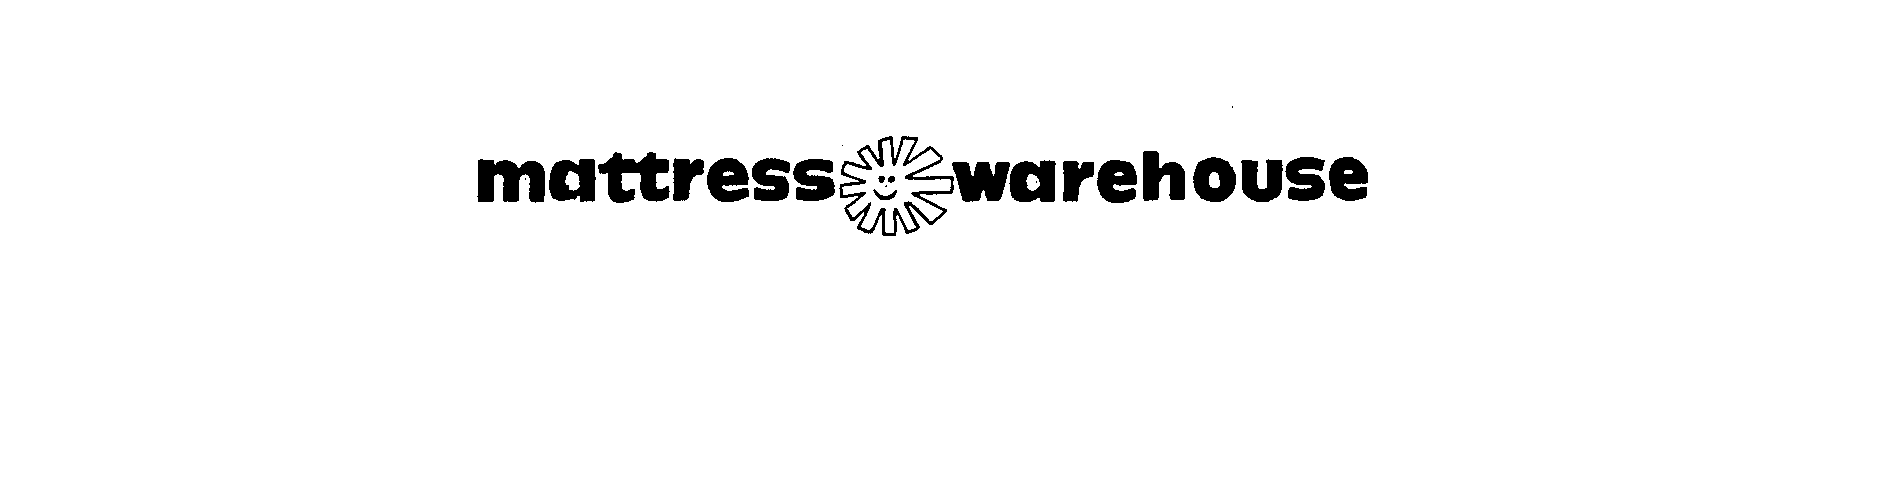  MATTRESS WAREHOUSE